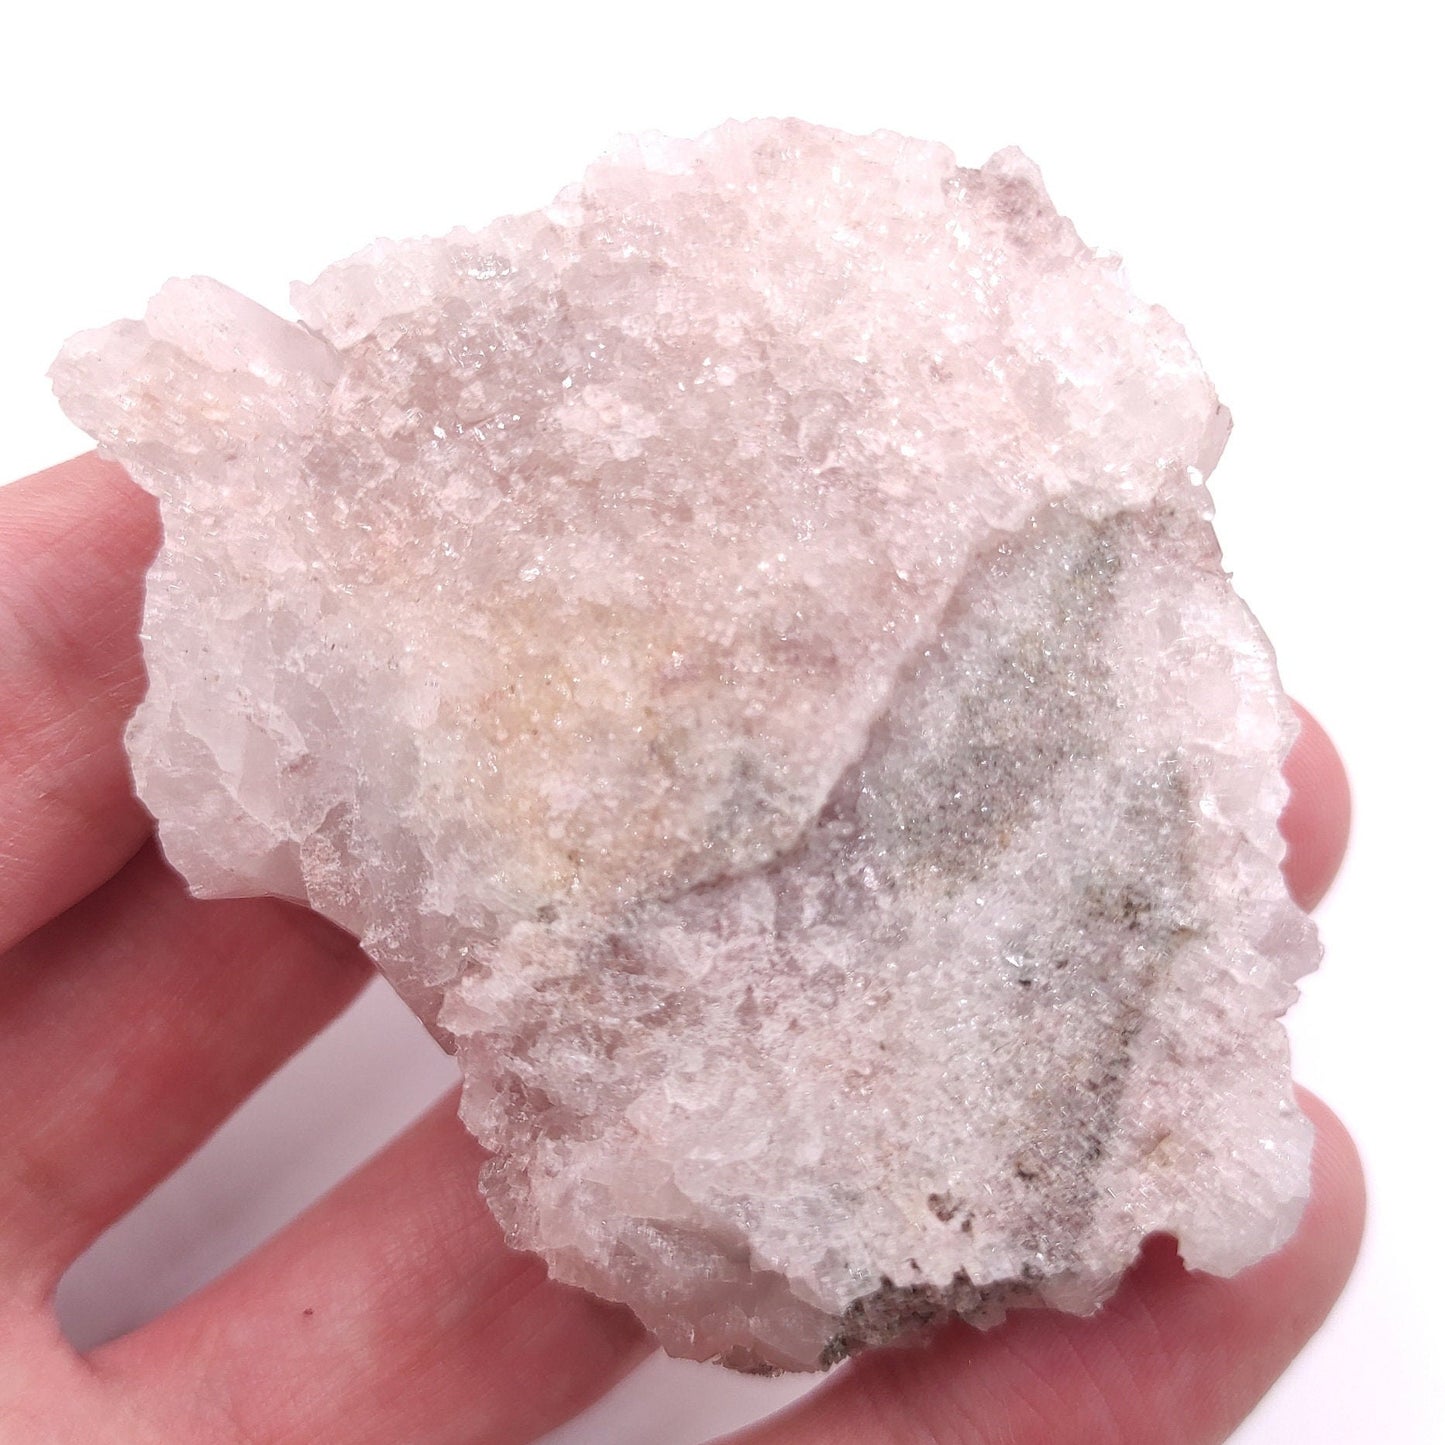 75g Natural Pink Lithium Coated Quartz Crystal - Bolivar, Santander, Colombia - Pink Quartz Cluster - Crystallized Quartz Mineral Specimen